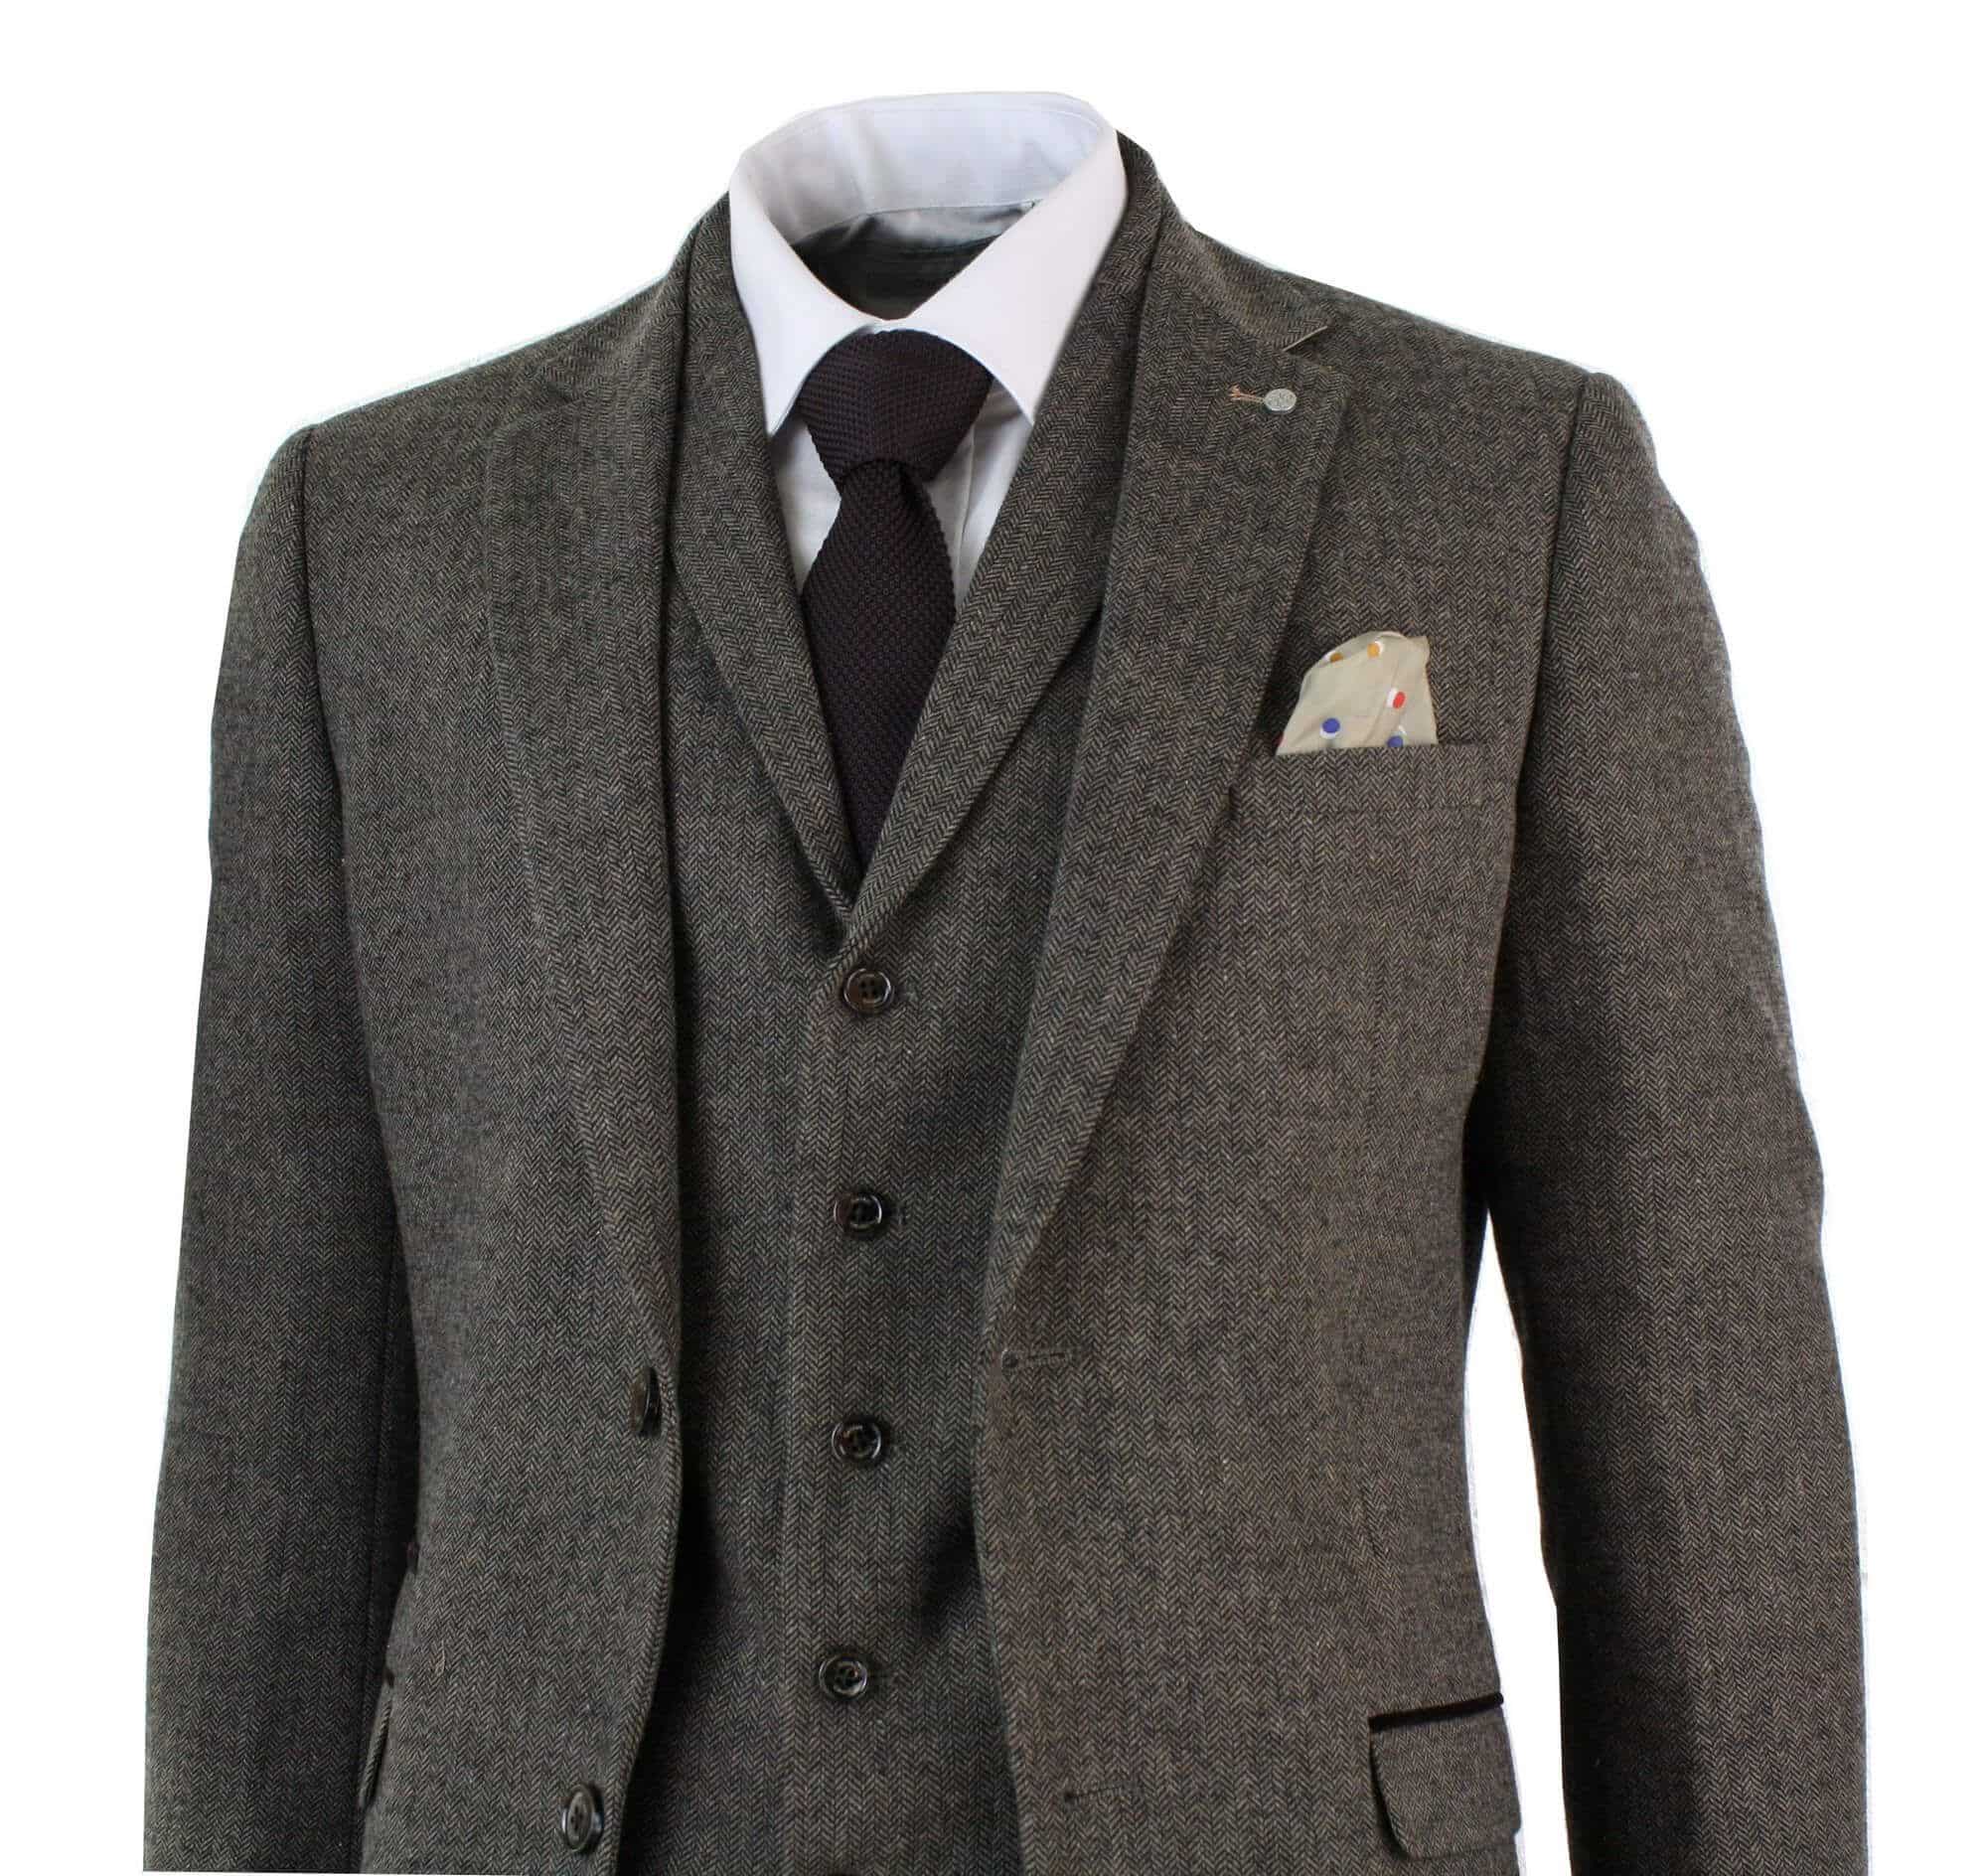 Men's Herringbone Tweed 3 Piece Wool Suits Vintage Dark Gray Classic Fit Custom